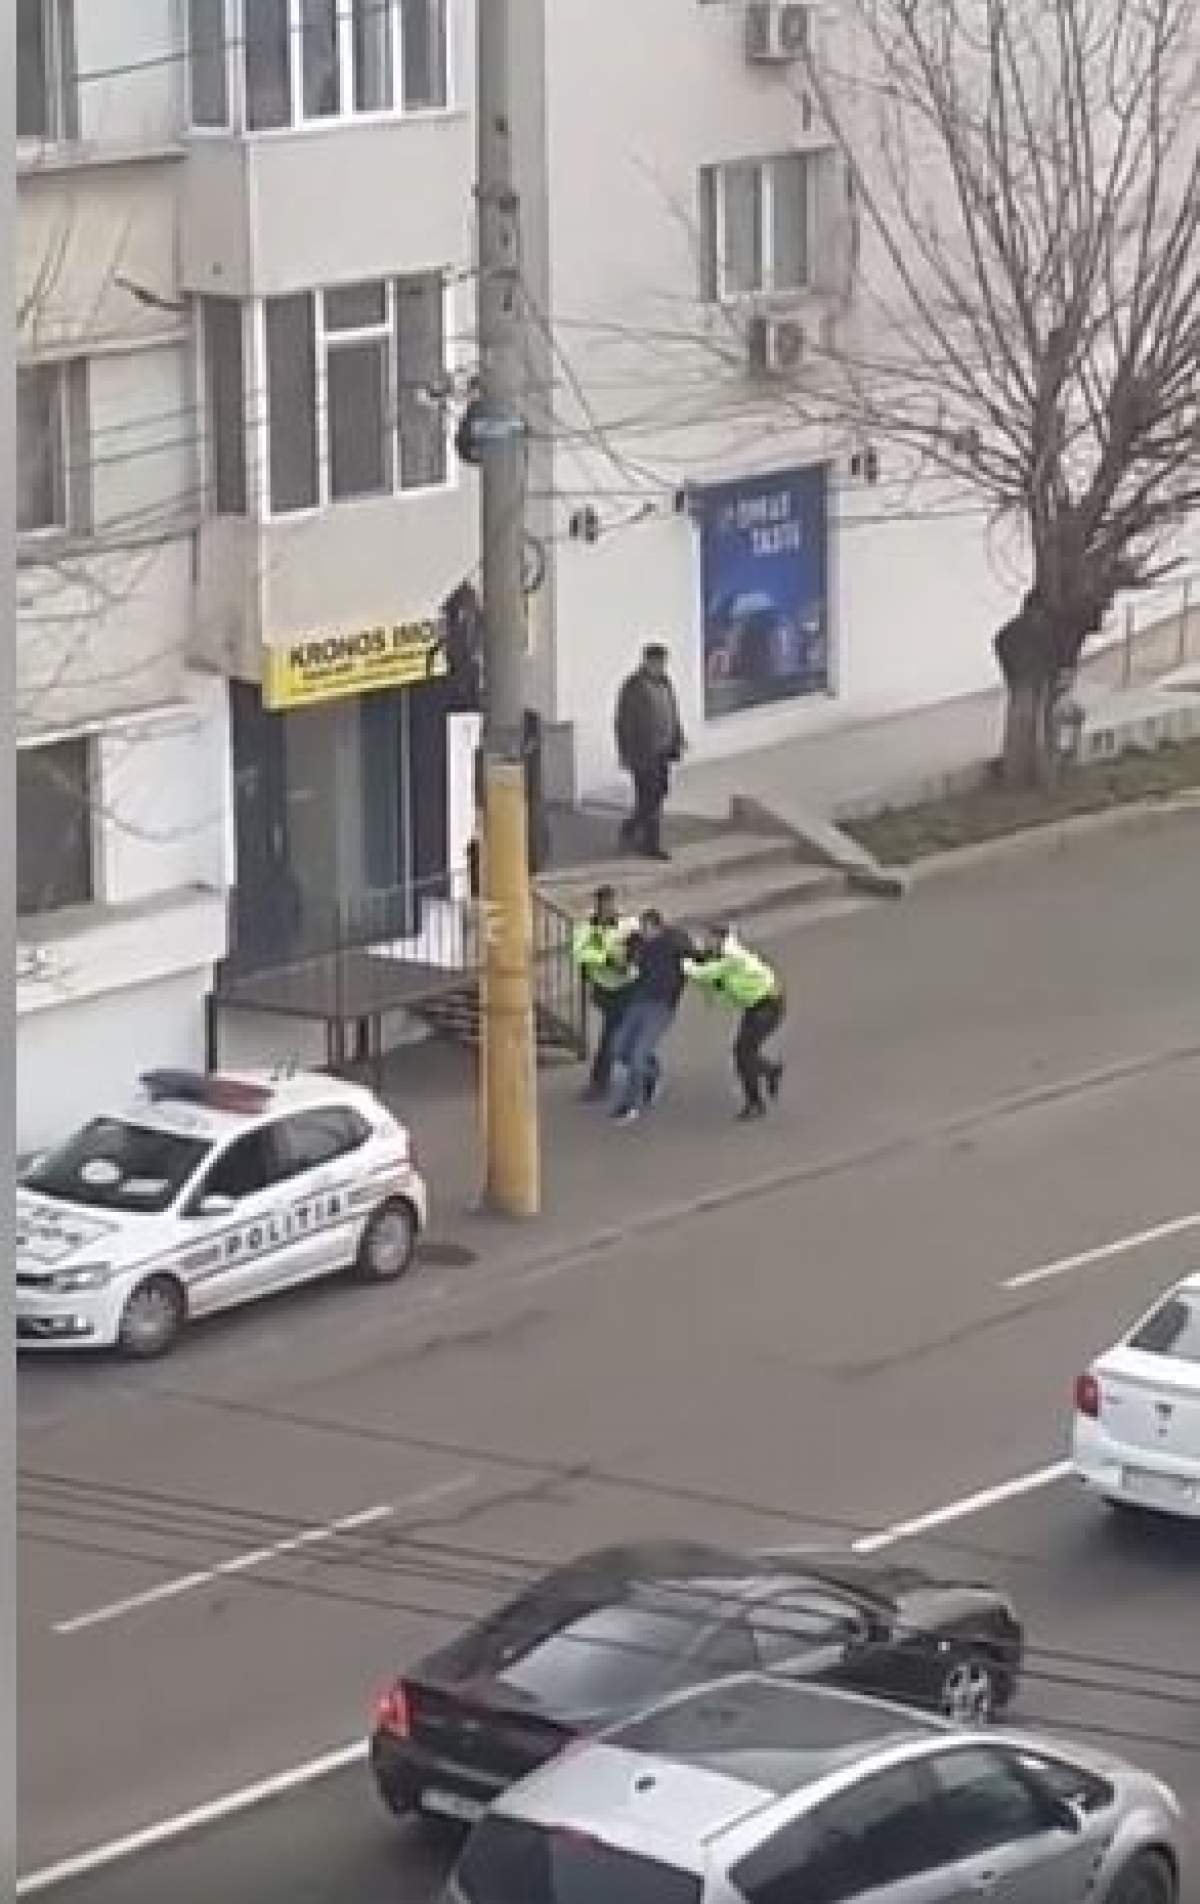 VIDEO / Constănţean încătuşat în plină stradă, după ce a refuzat să se legitimeze. Scene şocante